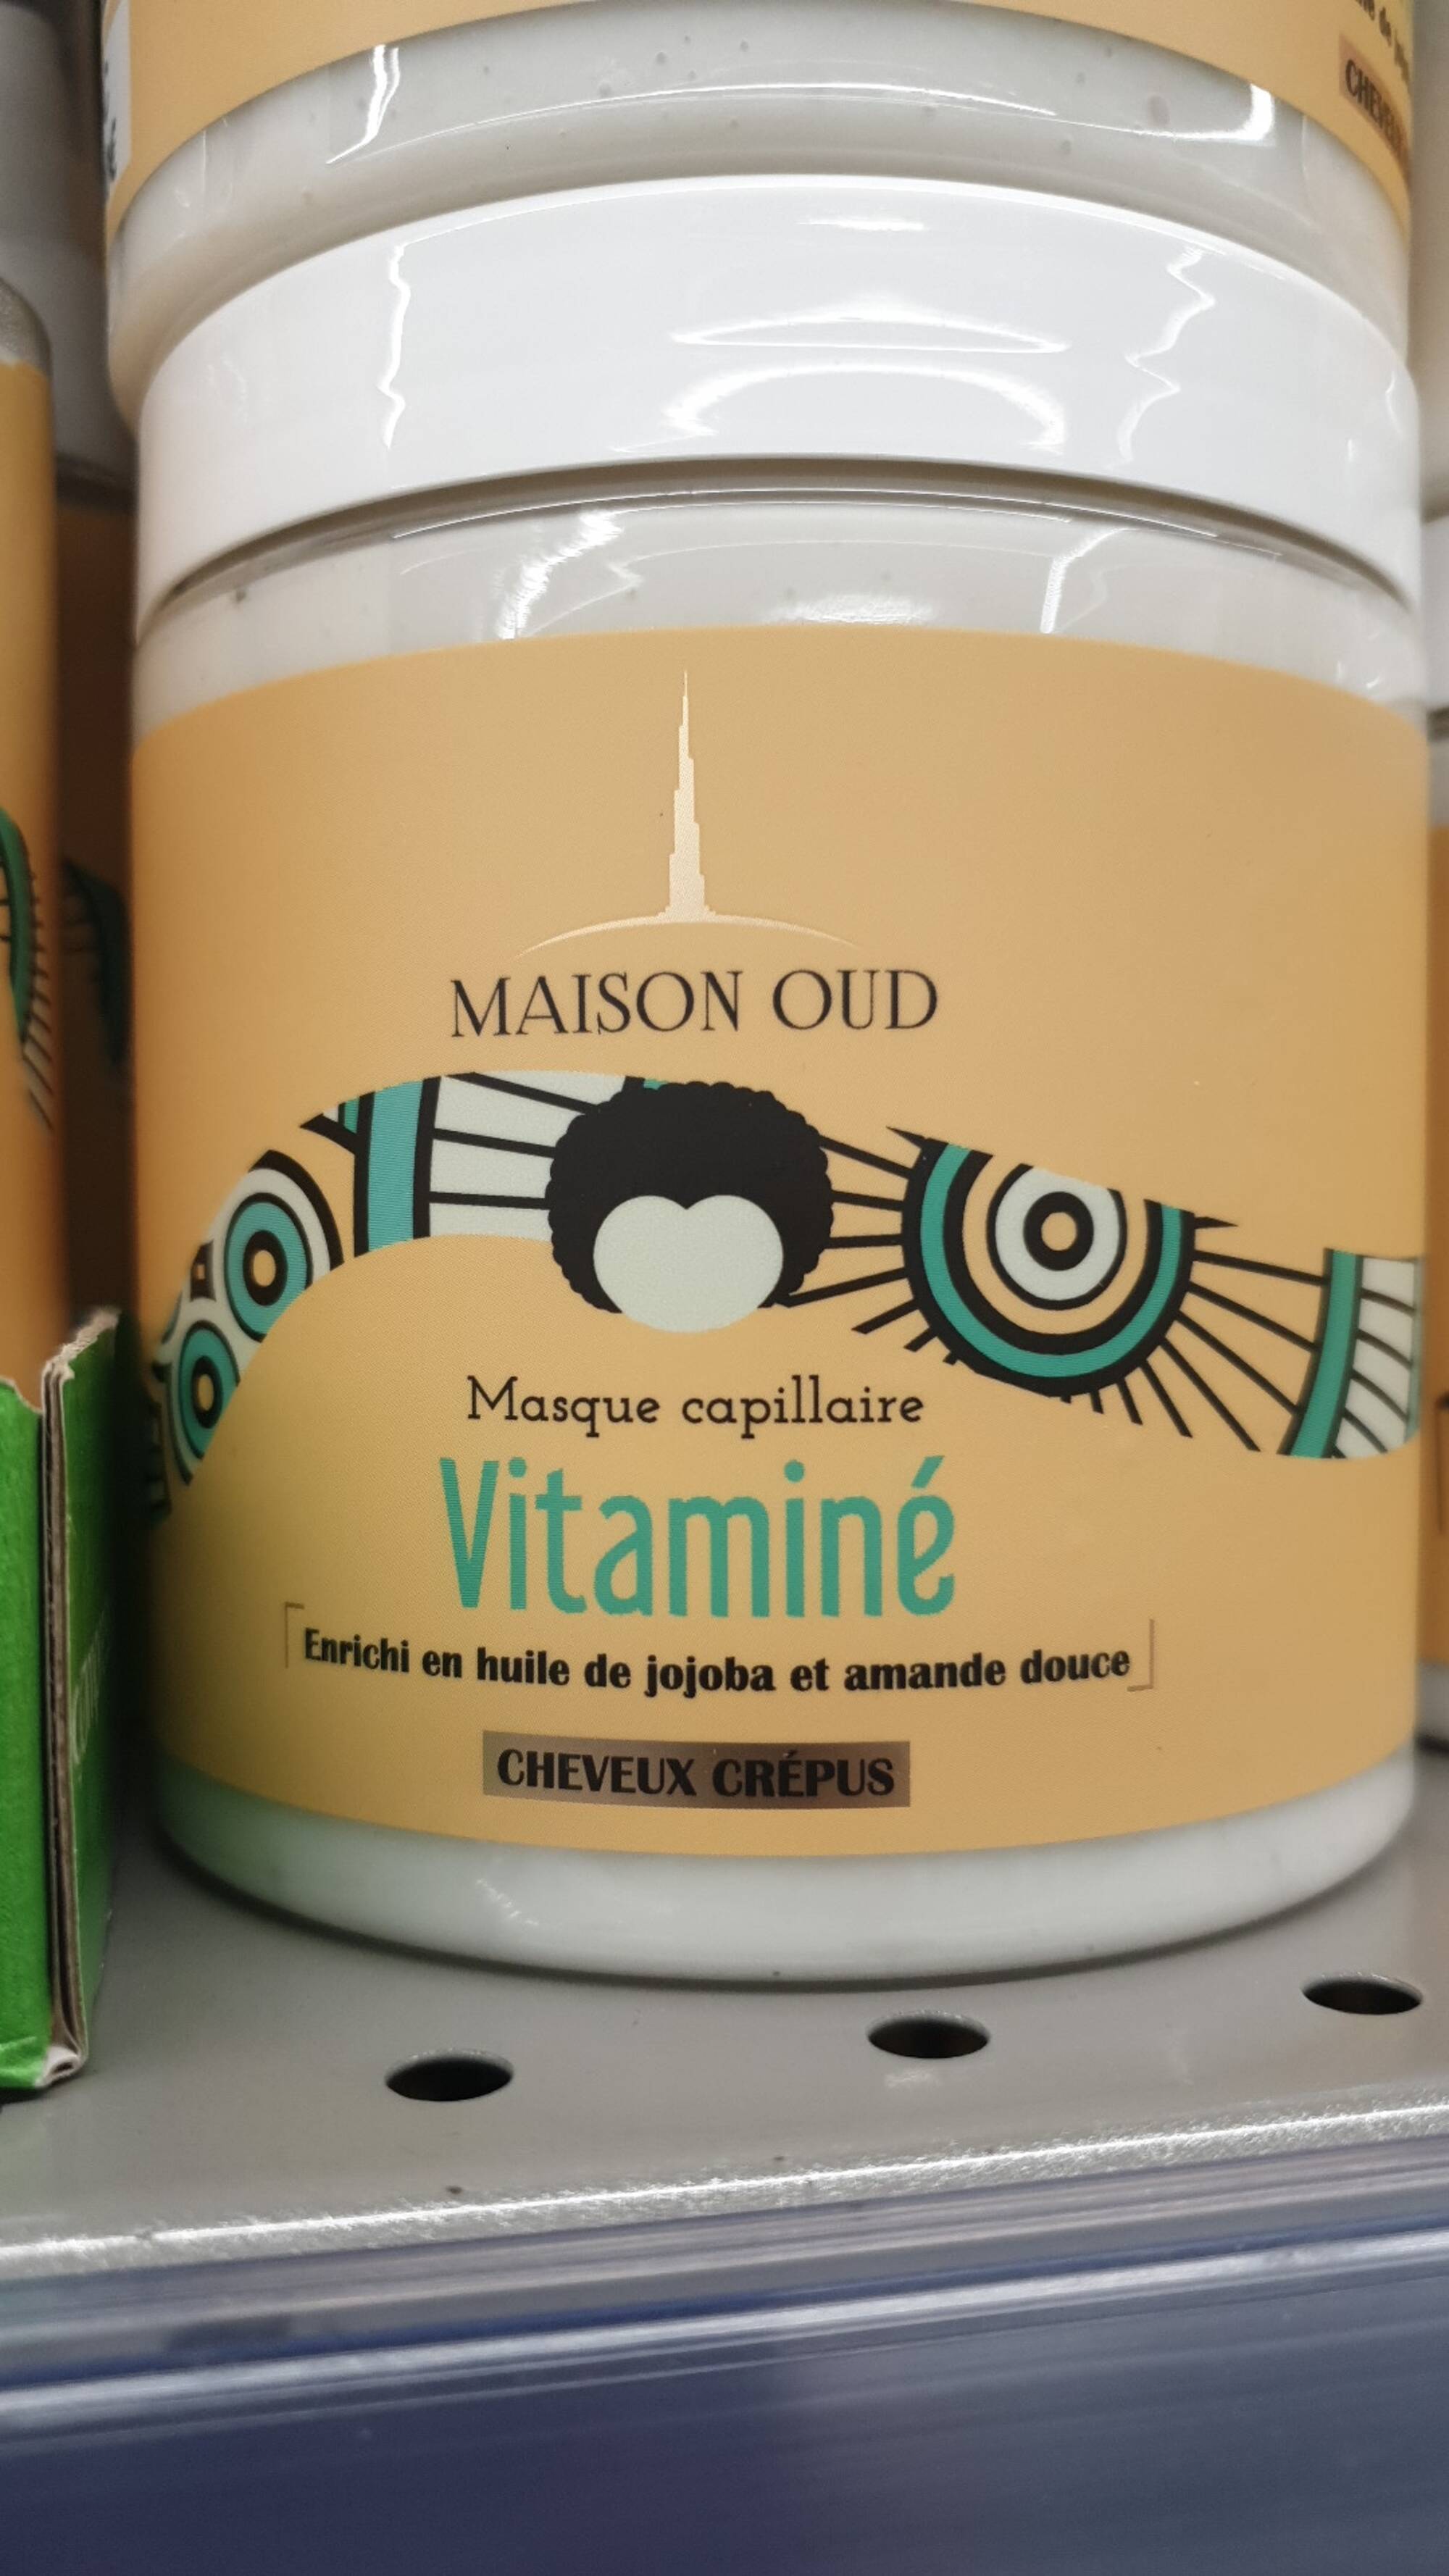 MAISON OUD - Masque capillaire vitaminé